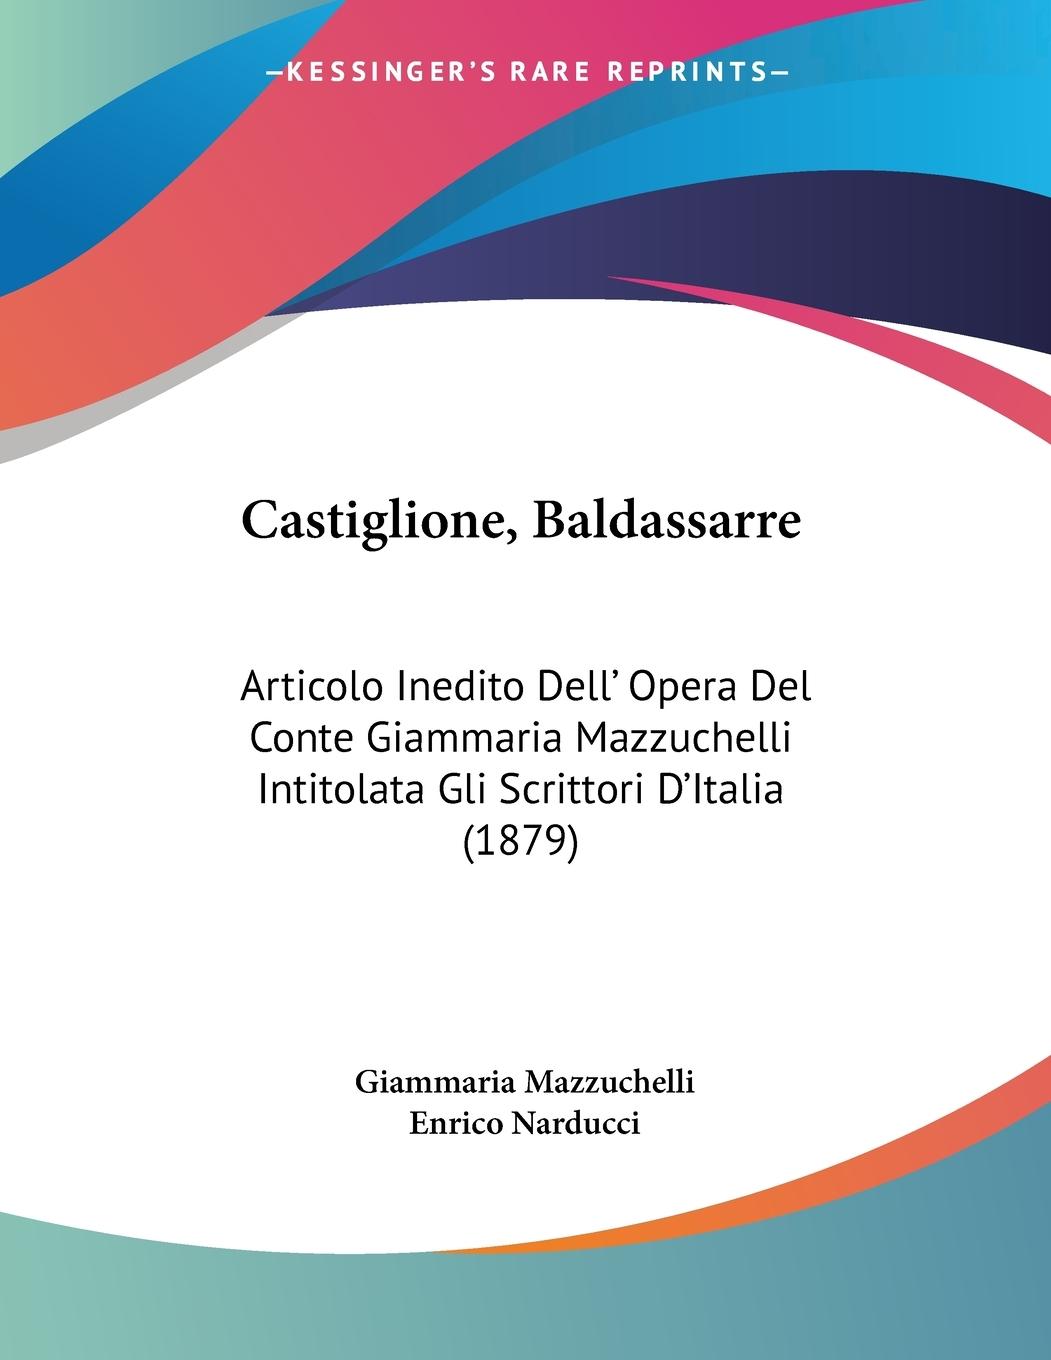 Castiglione, Baldassarre - Mazzuchelli, Giammaria